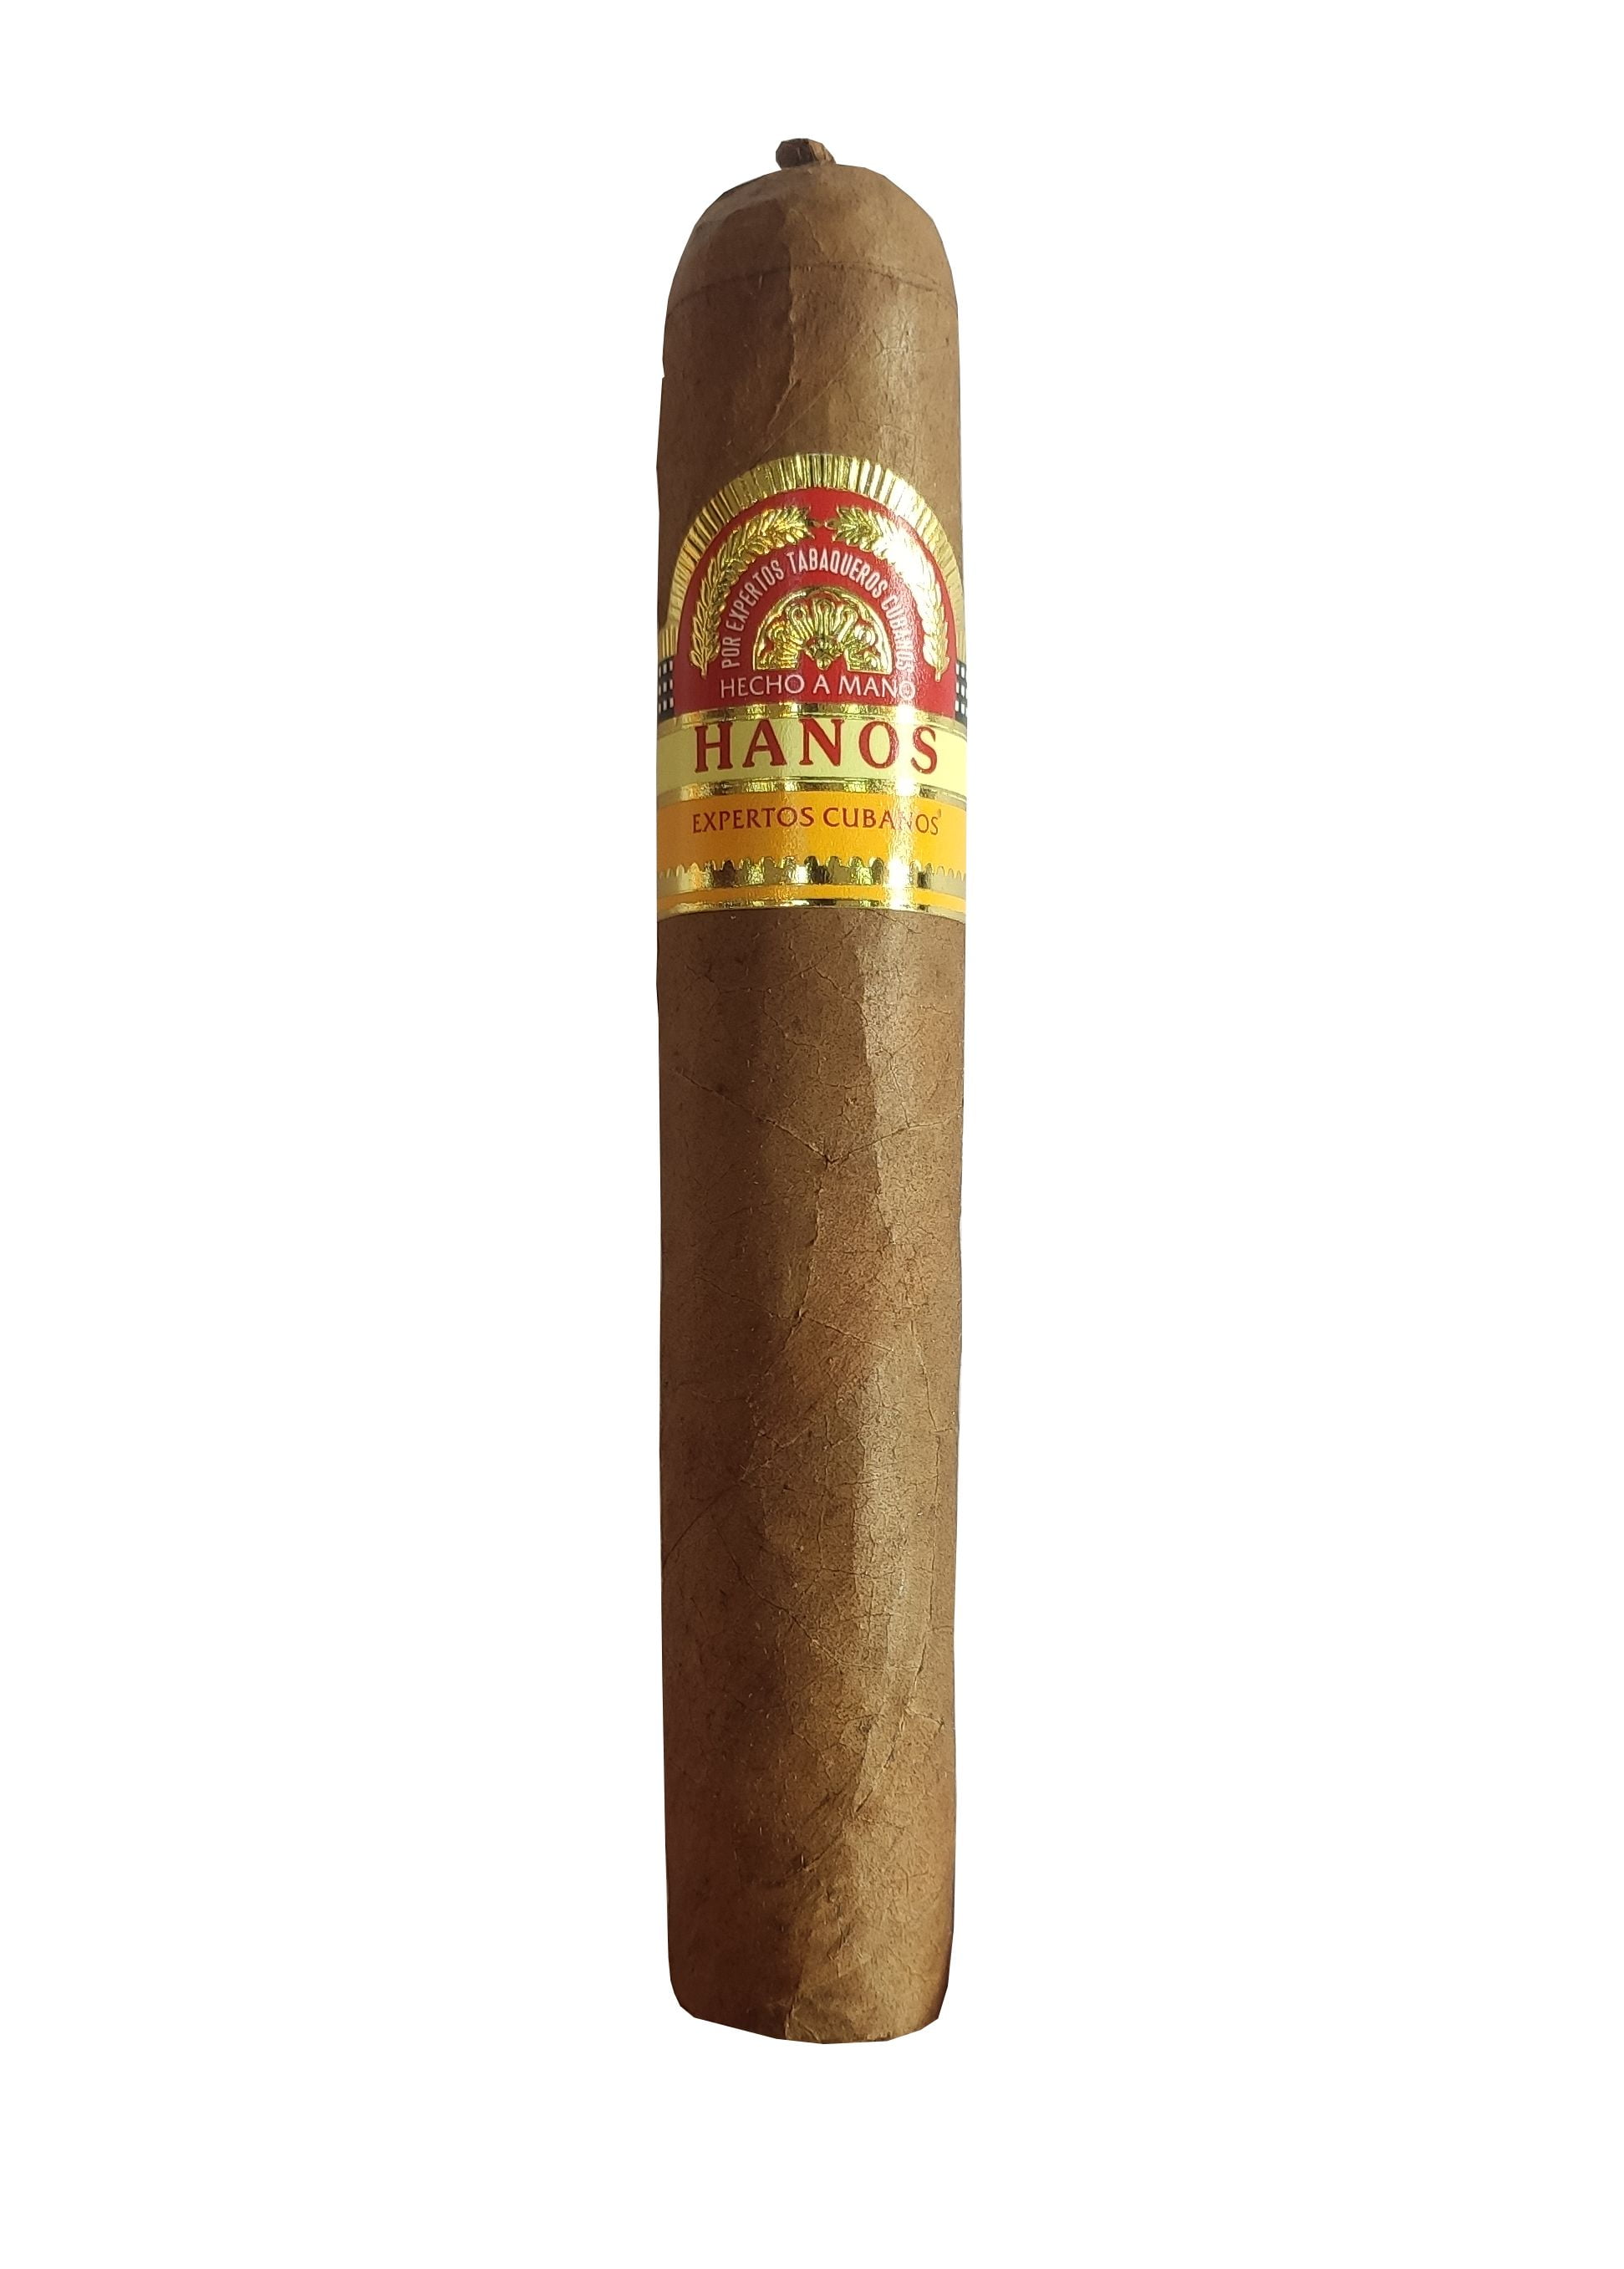 Cigar Hanos 52 (Hộp sơn mài 10 điếu)